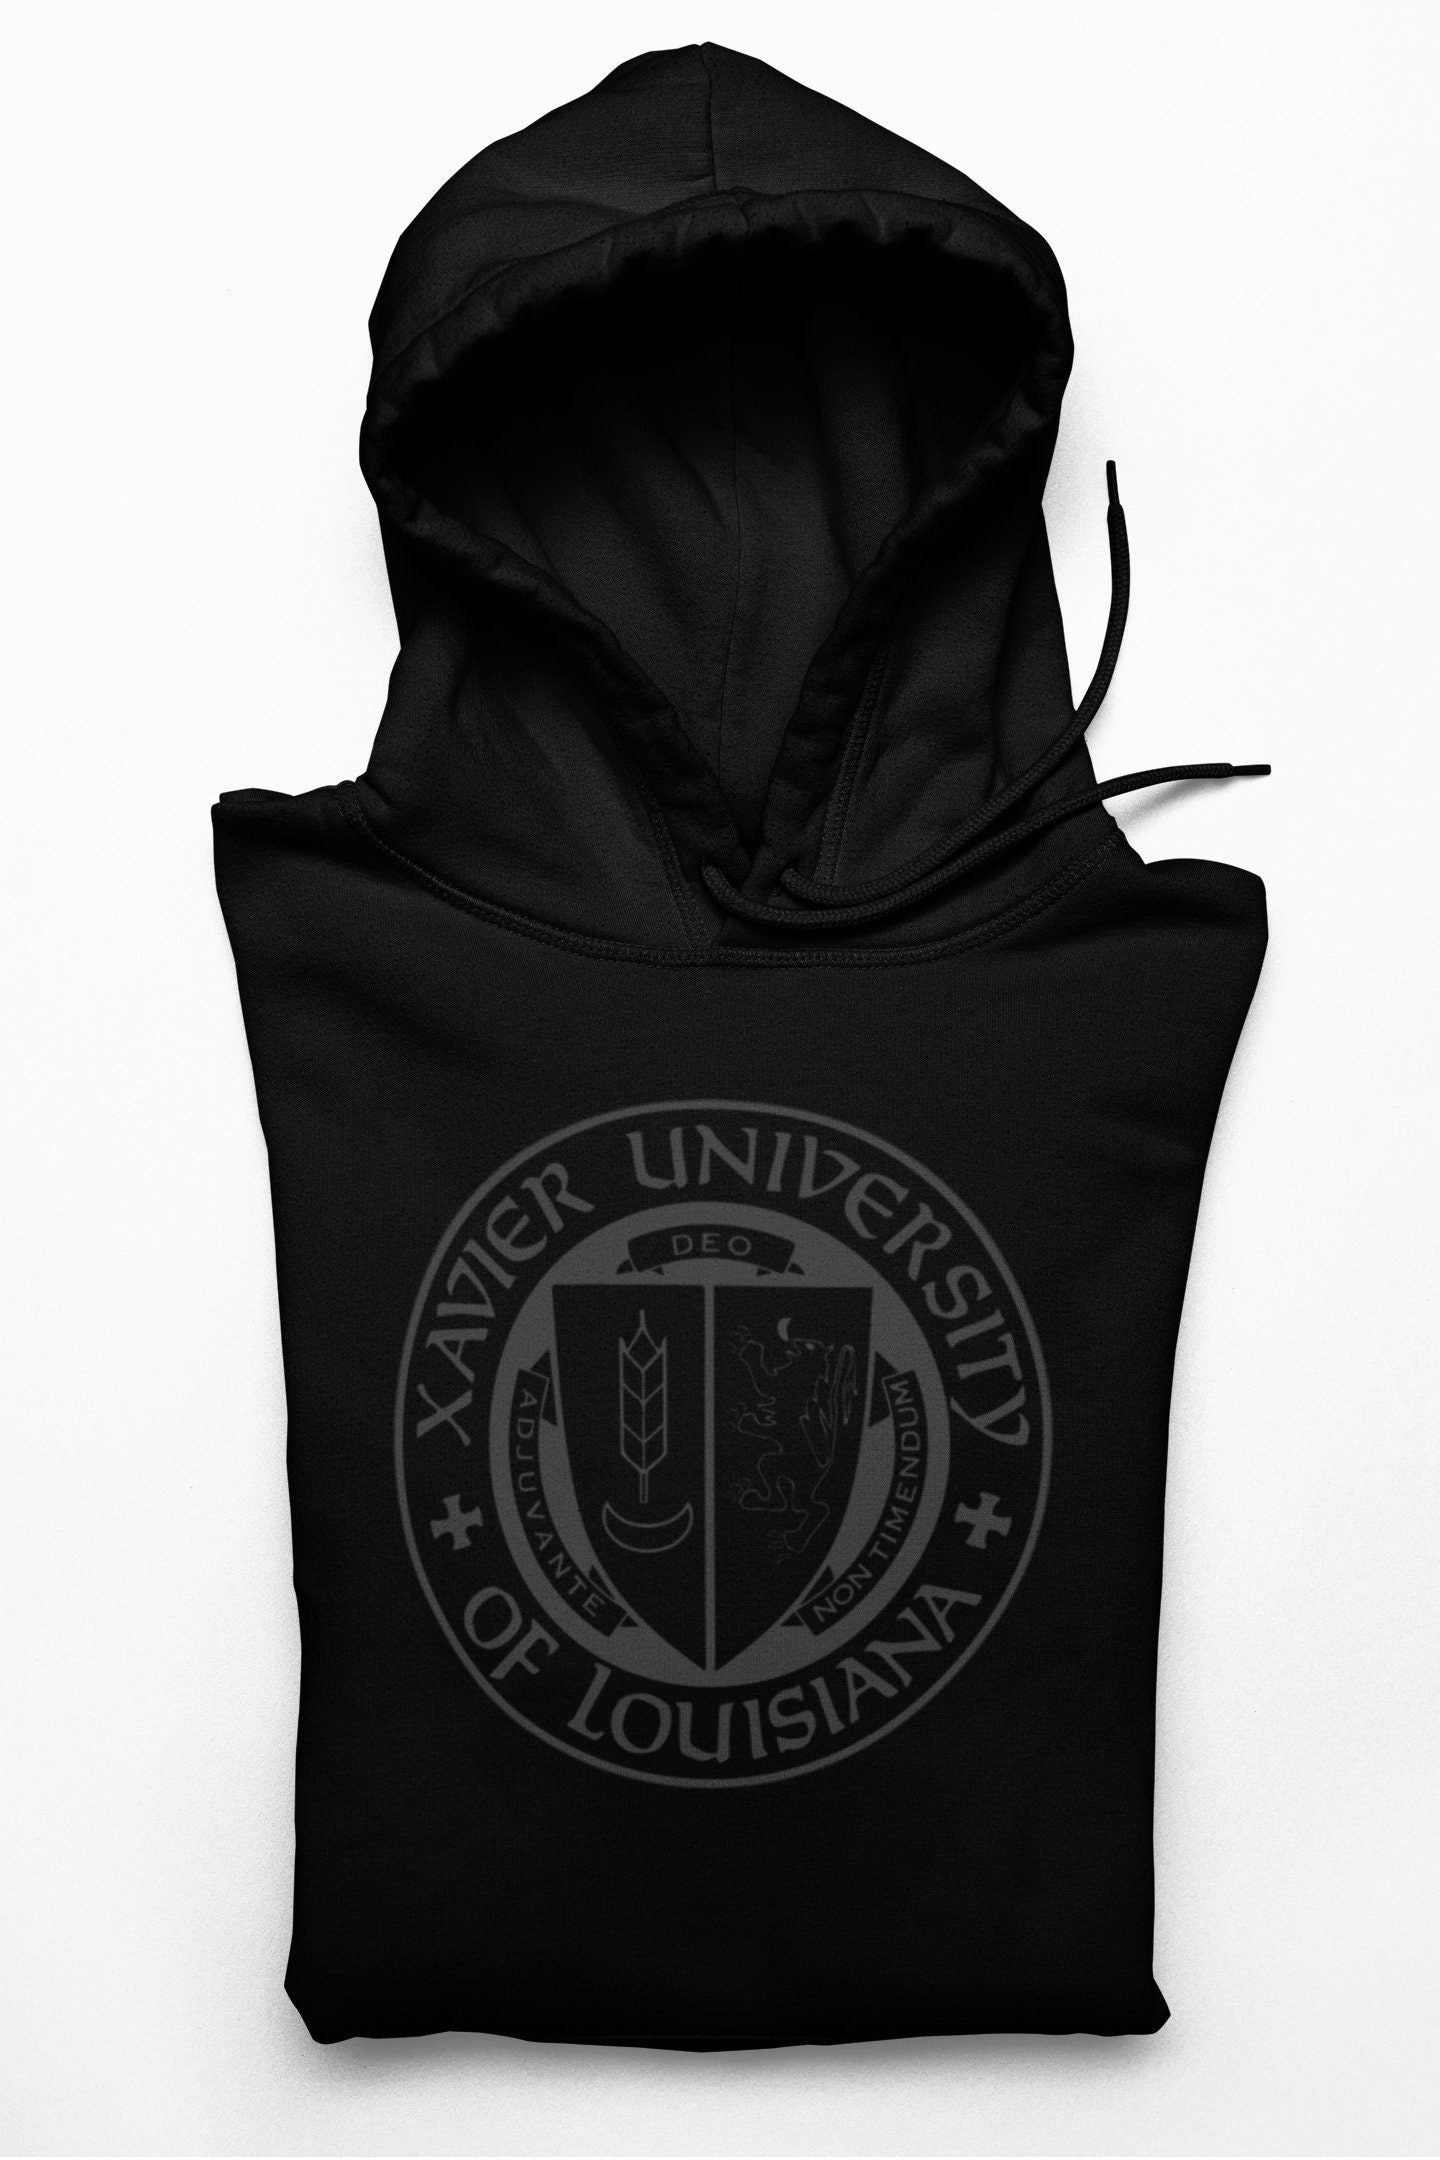 Xavier University | VARSITY JACKET BLACK UNISEX